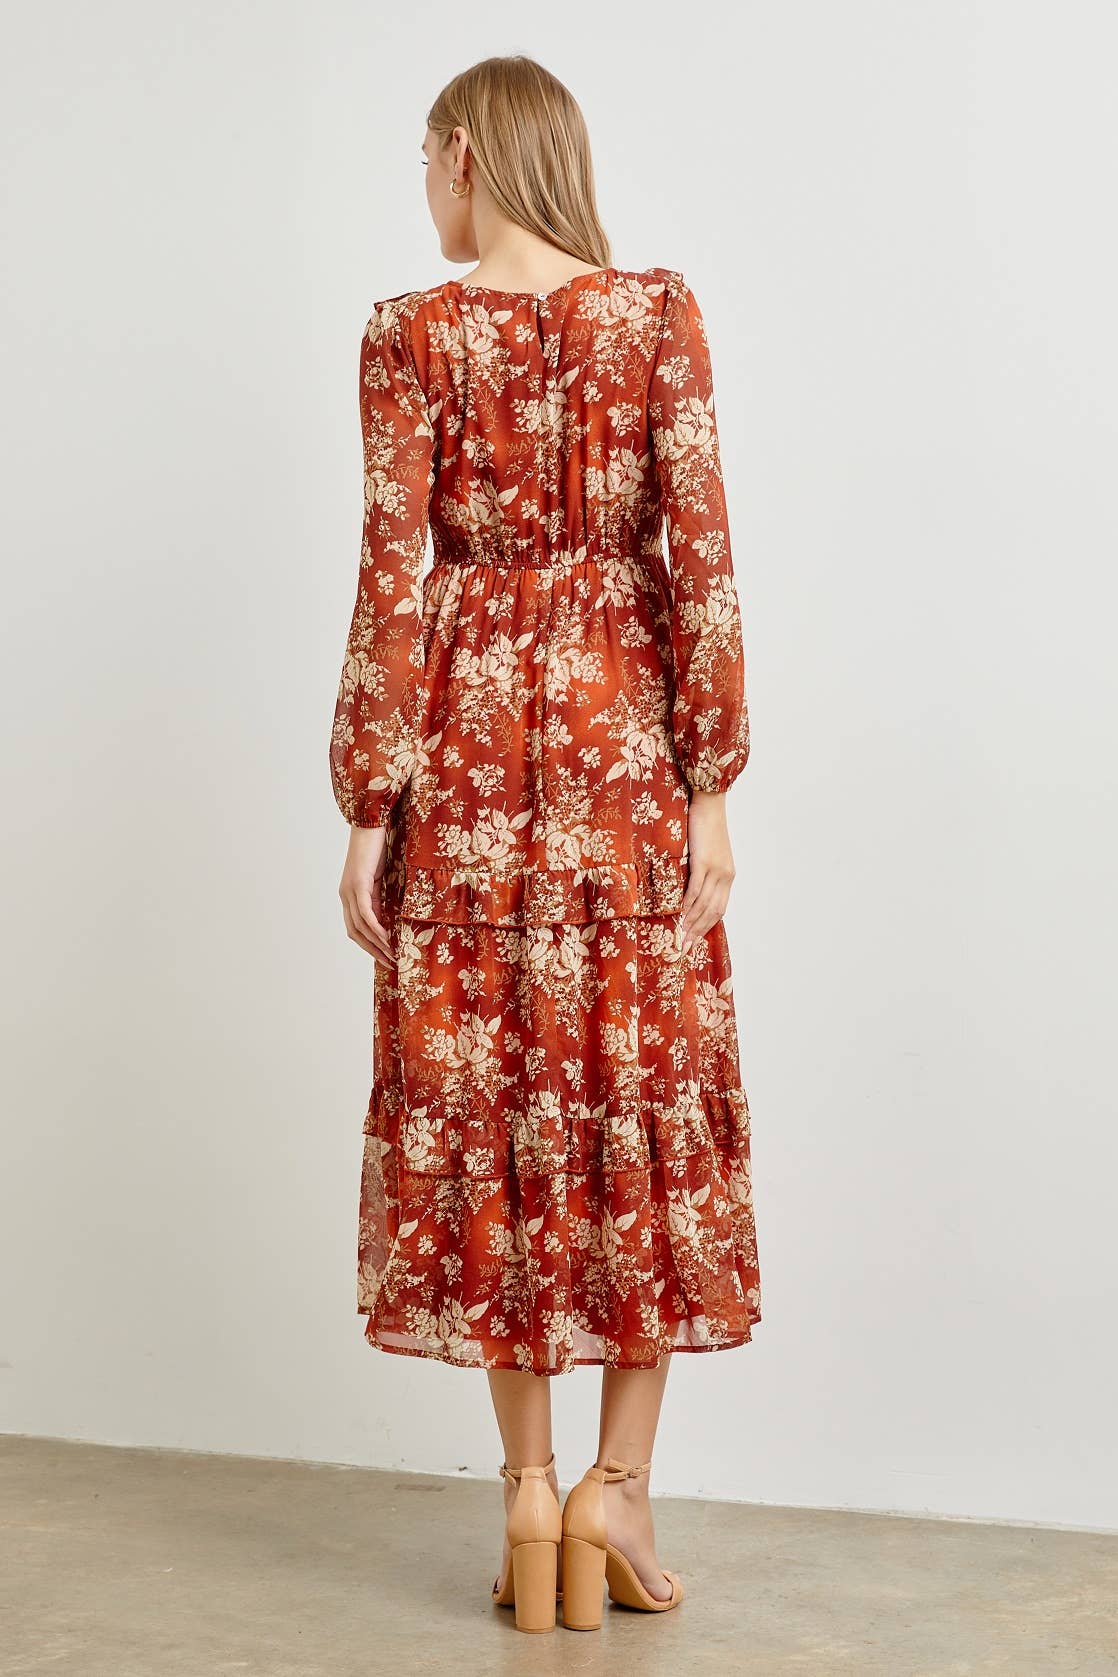 Rust Floral Maxi Dress